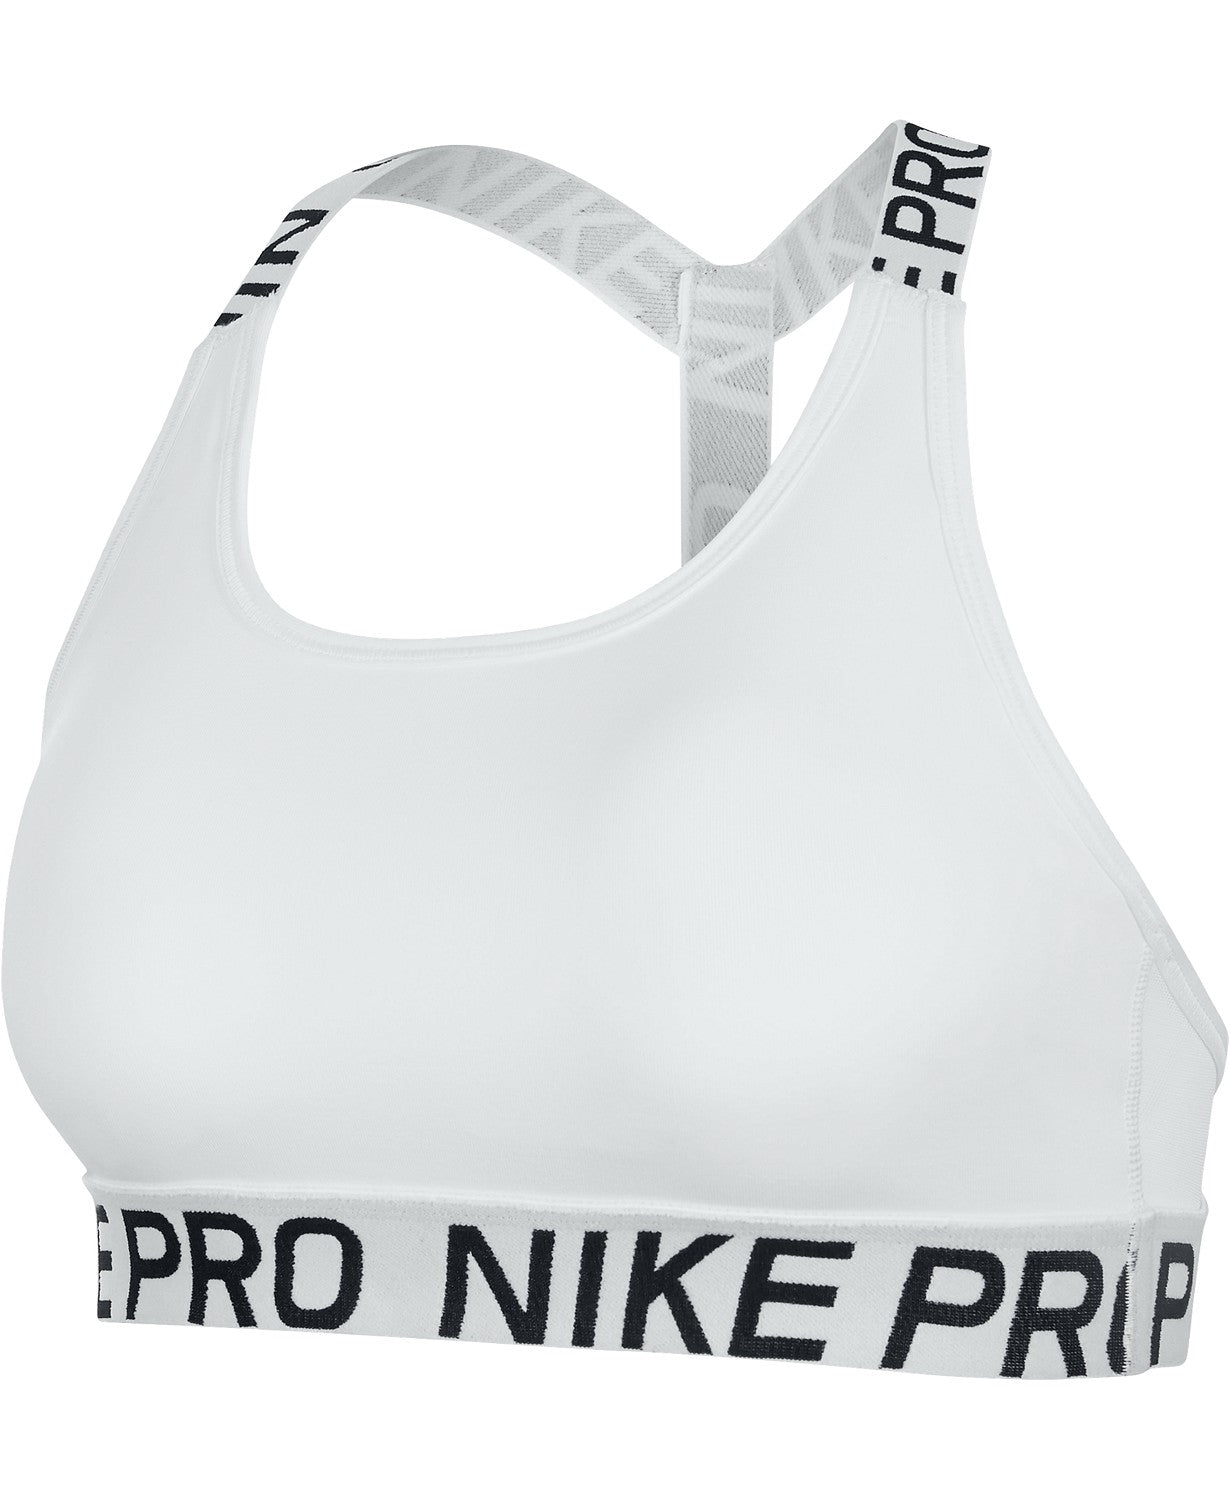 Nike Womens Pro Dri-Fit T-Back Mid-Impact Sports Bra Color Black